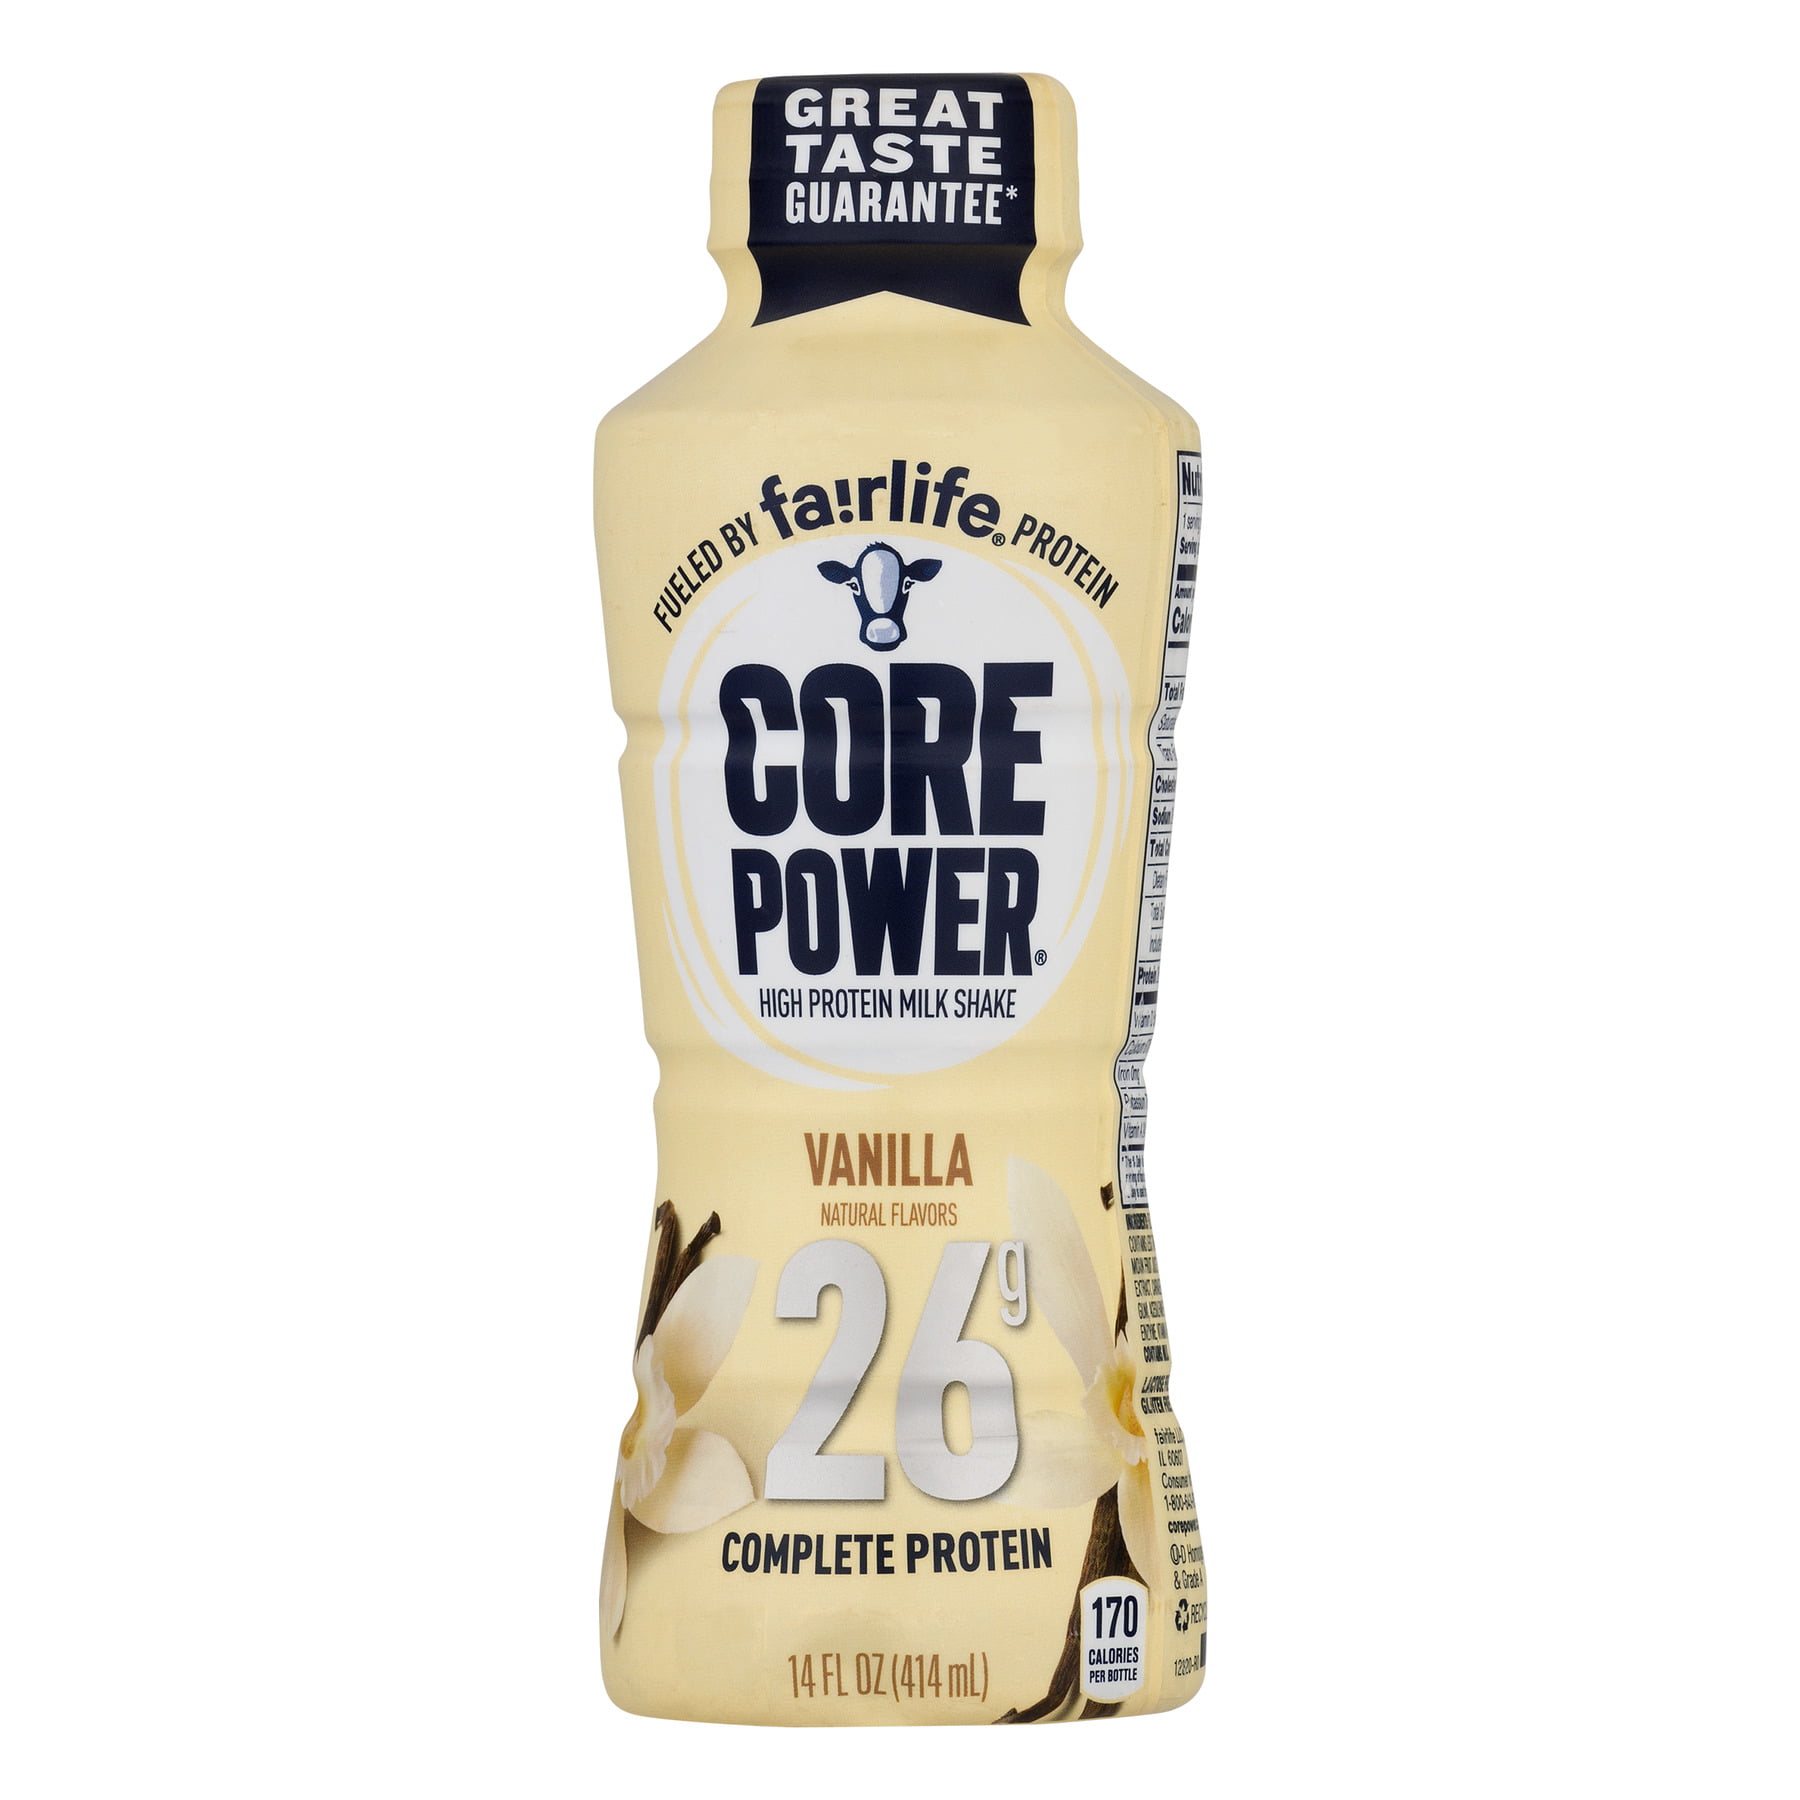 Core Power Vanilla 26G Protein Shake - 14 fl oz Bottle